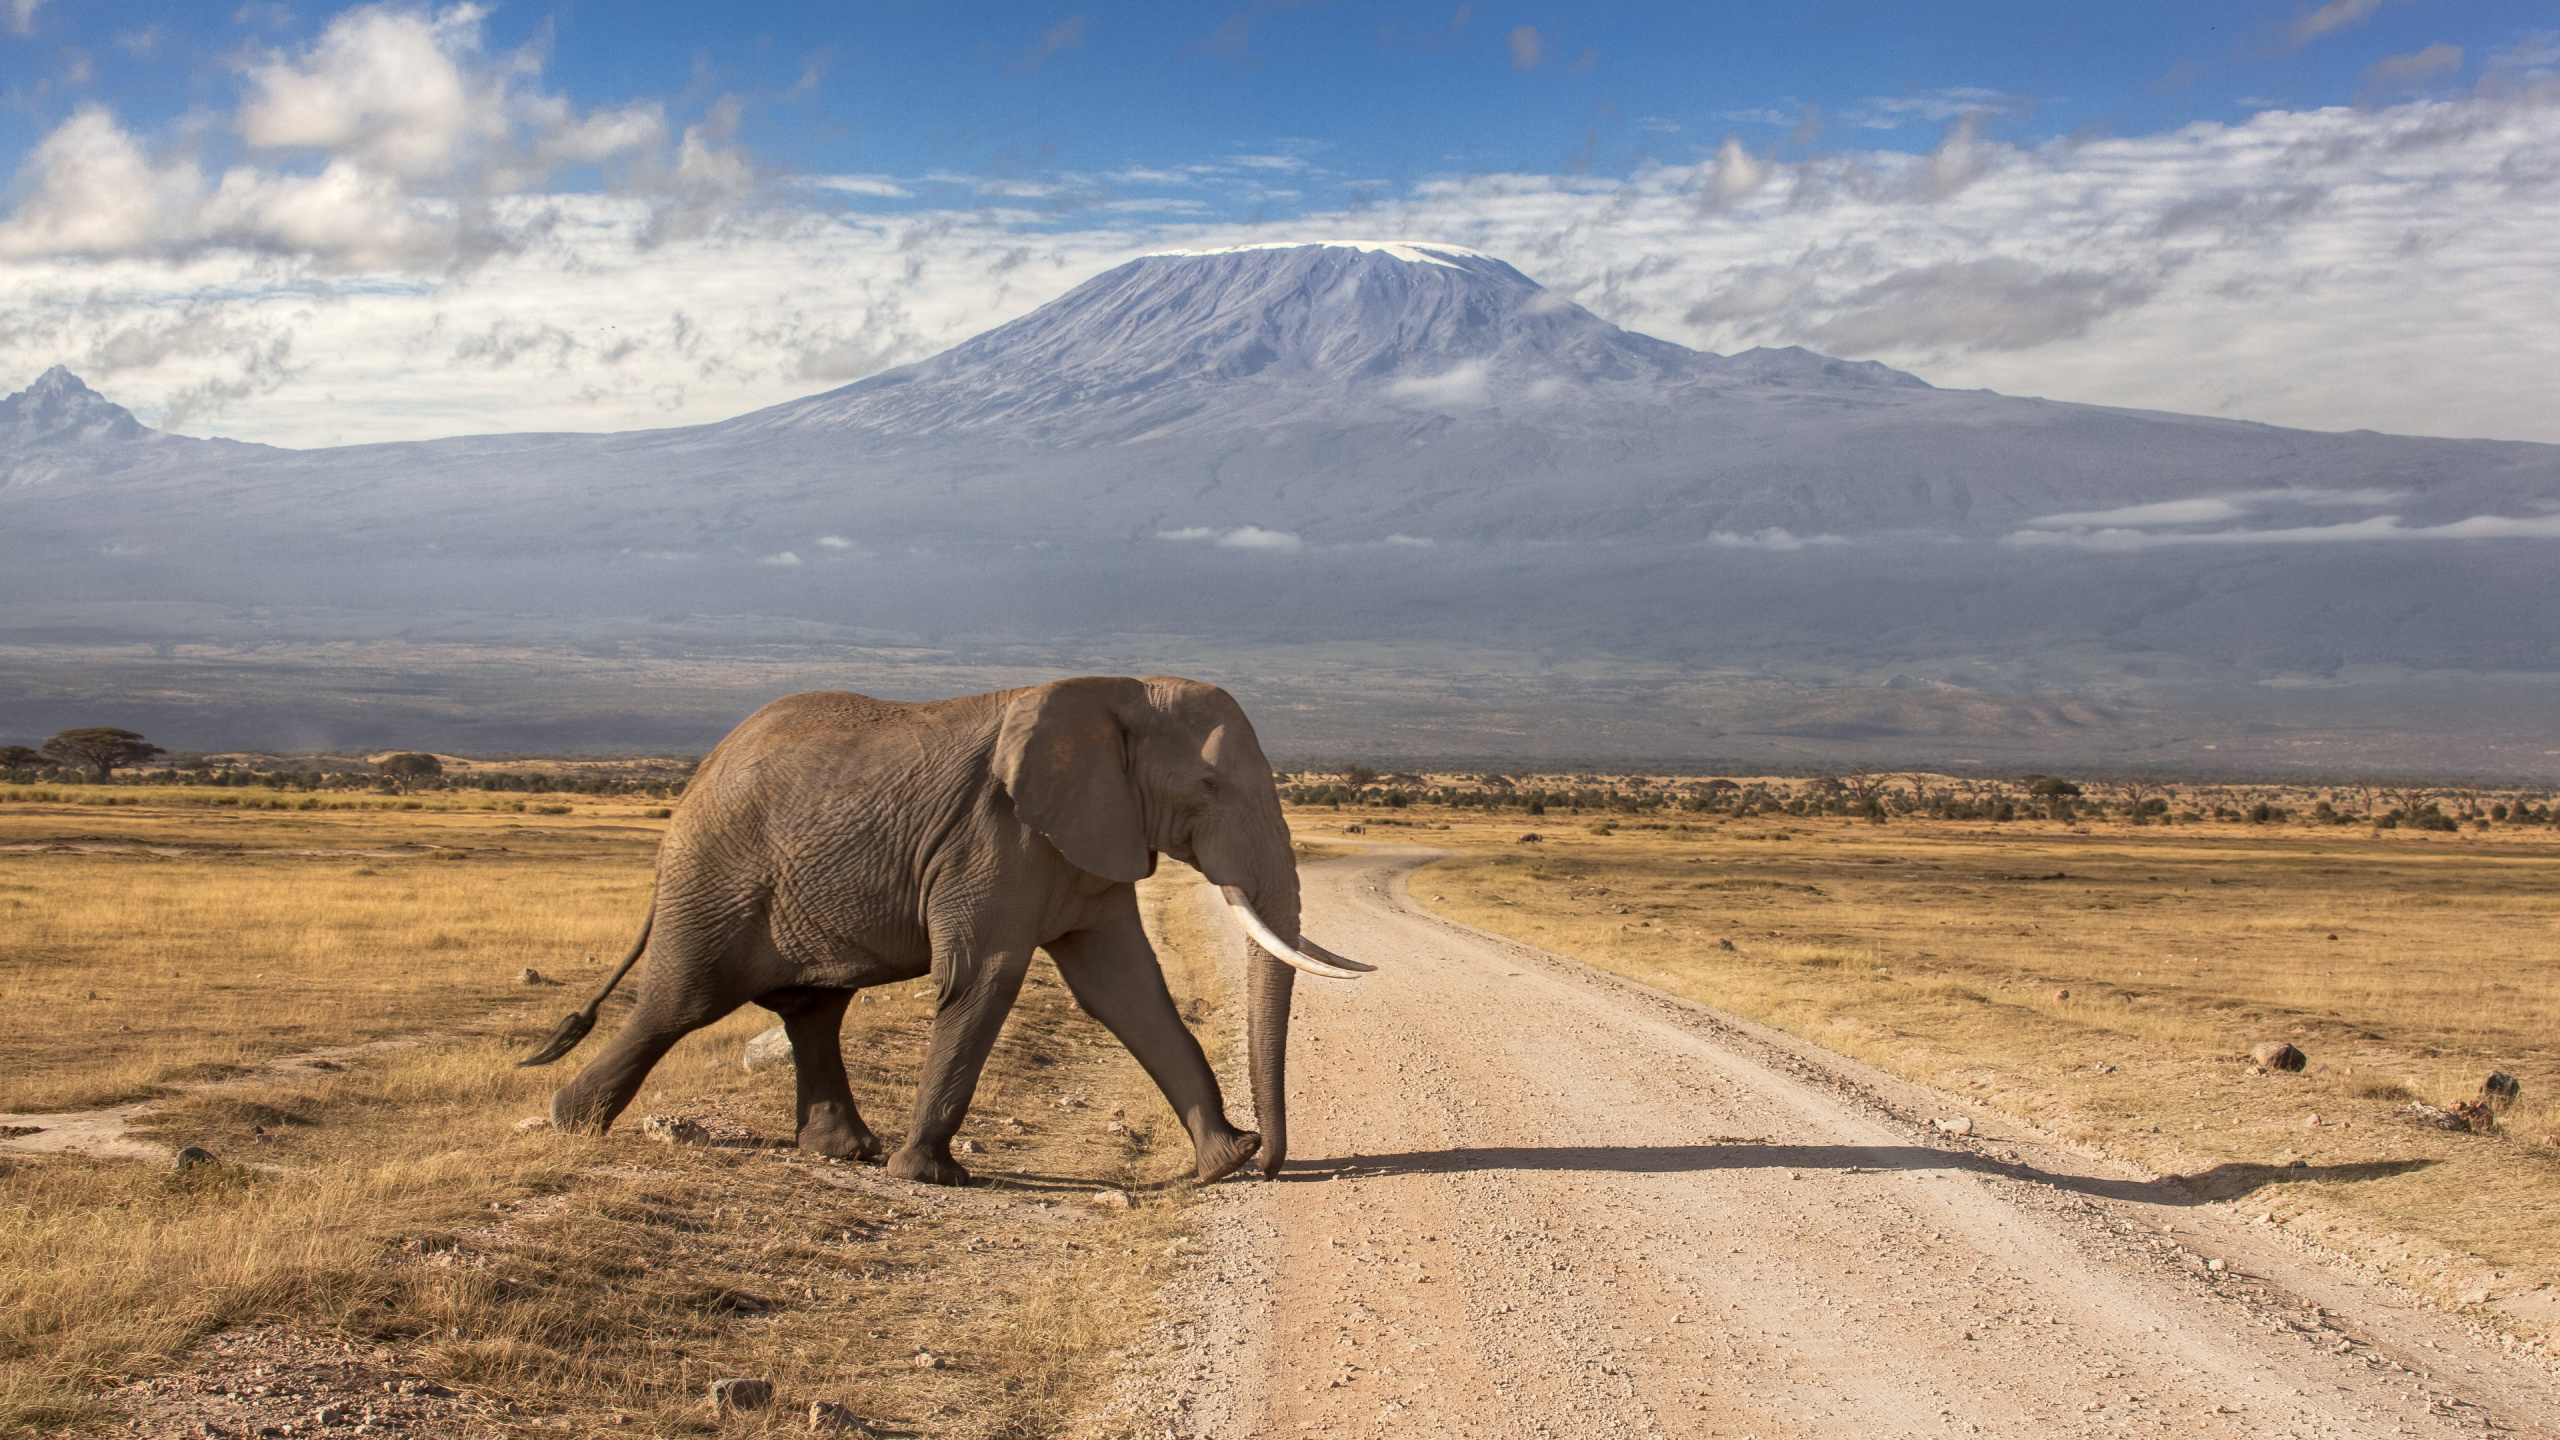 安博塞利国家公园, 马赛马拉, Safari, 大象和猛犸象, 野生动物 壁纸 2560x1440 允许